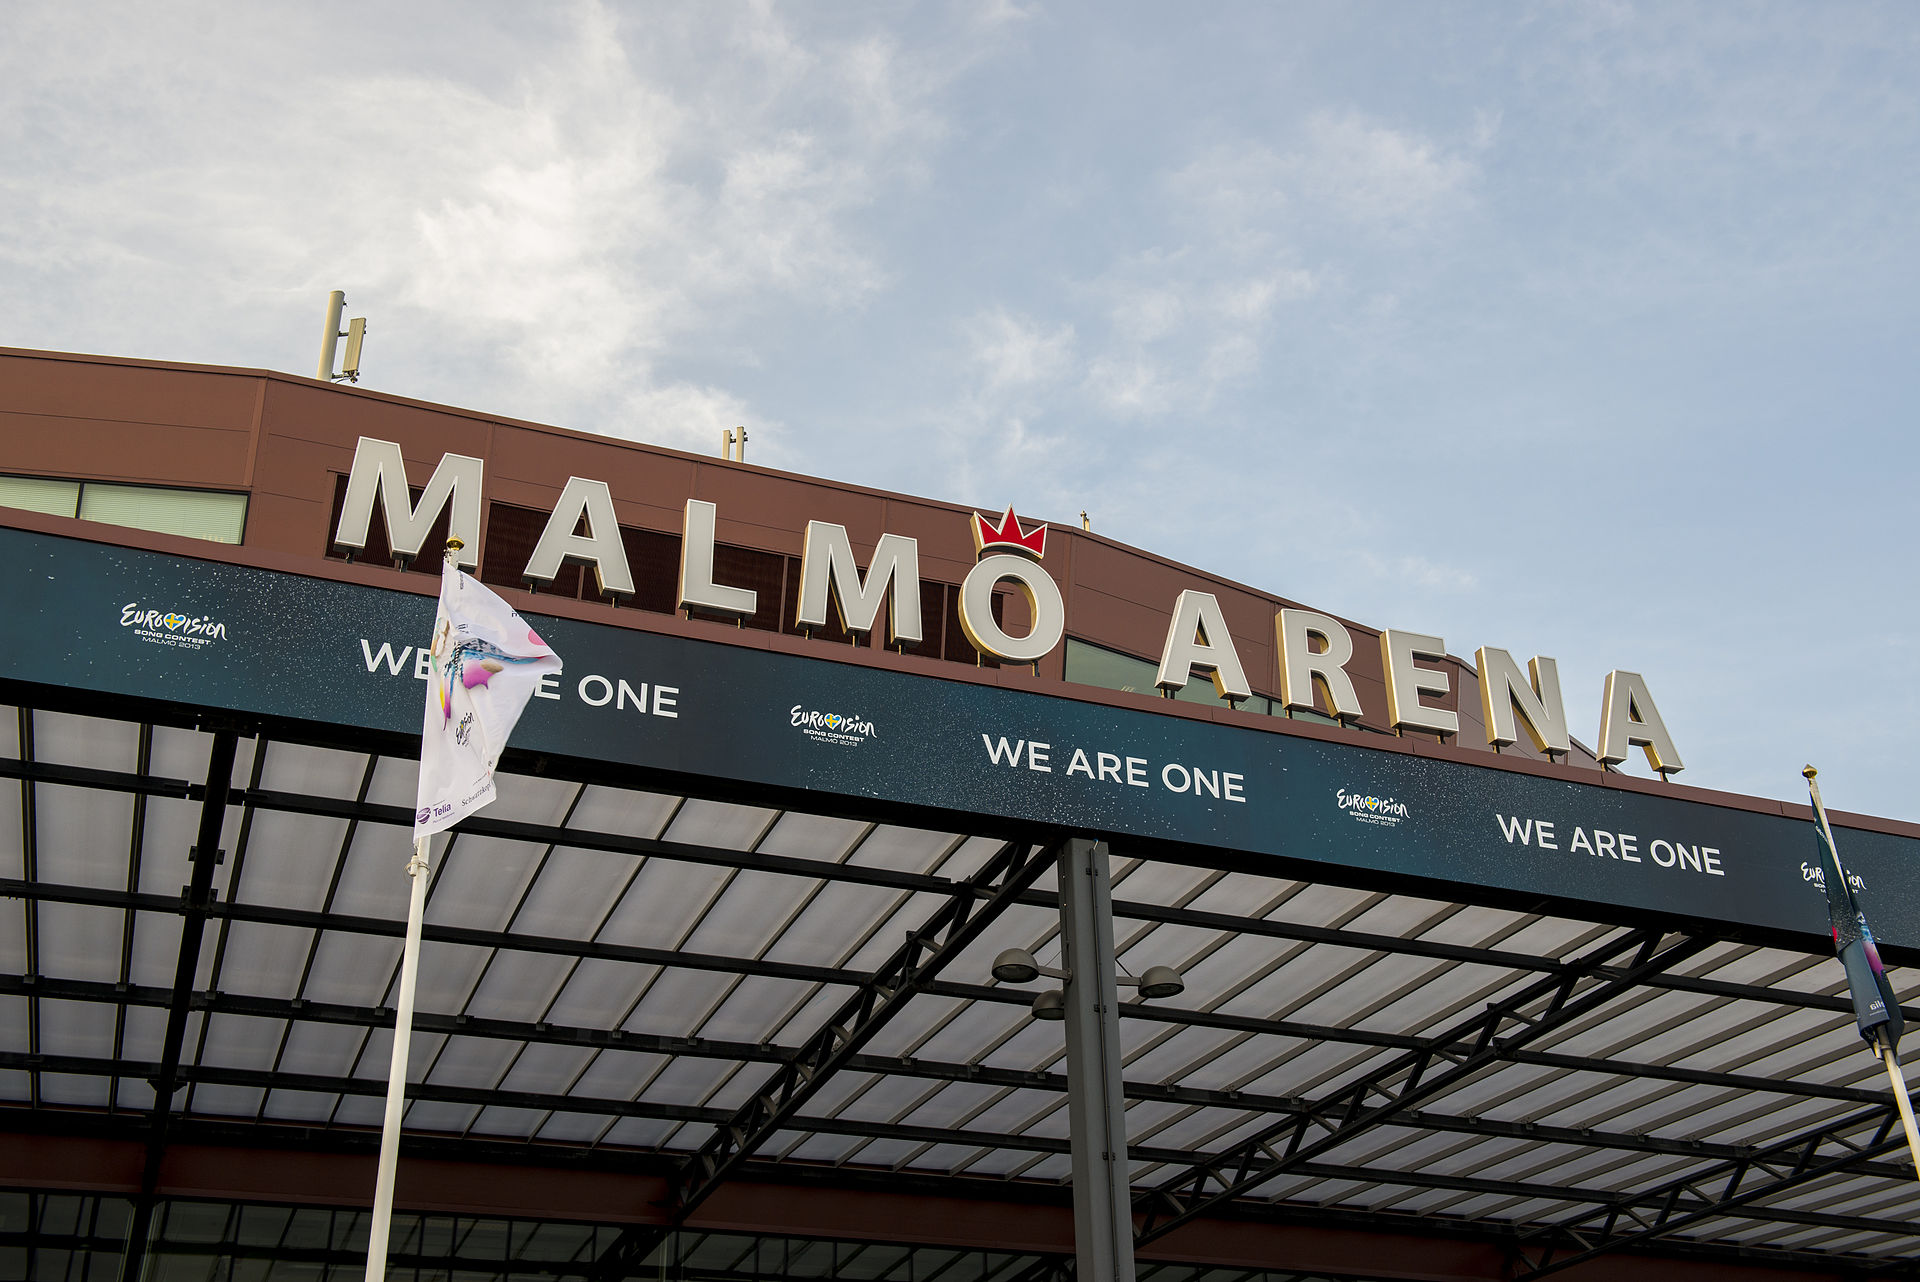 malmo_arena_esc2013_entrance_02